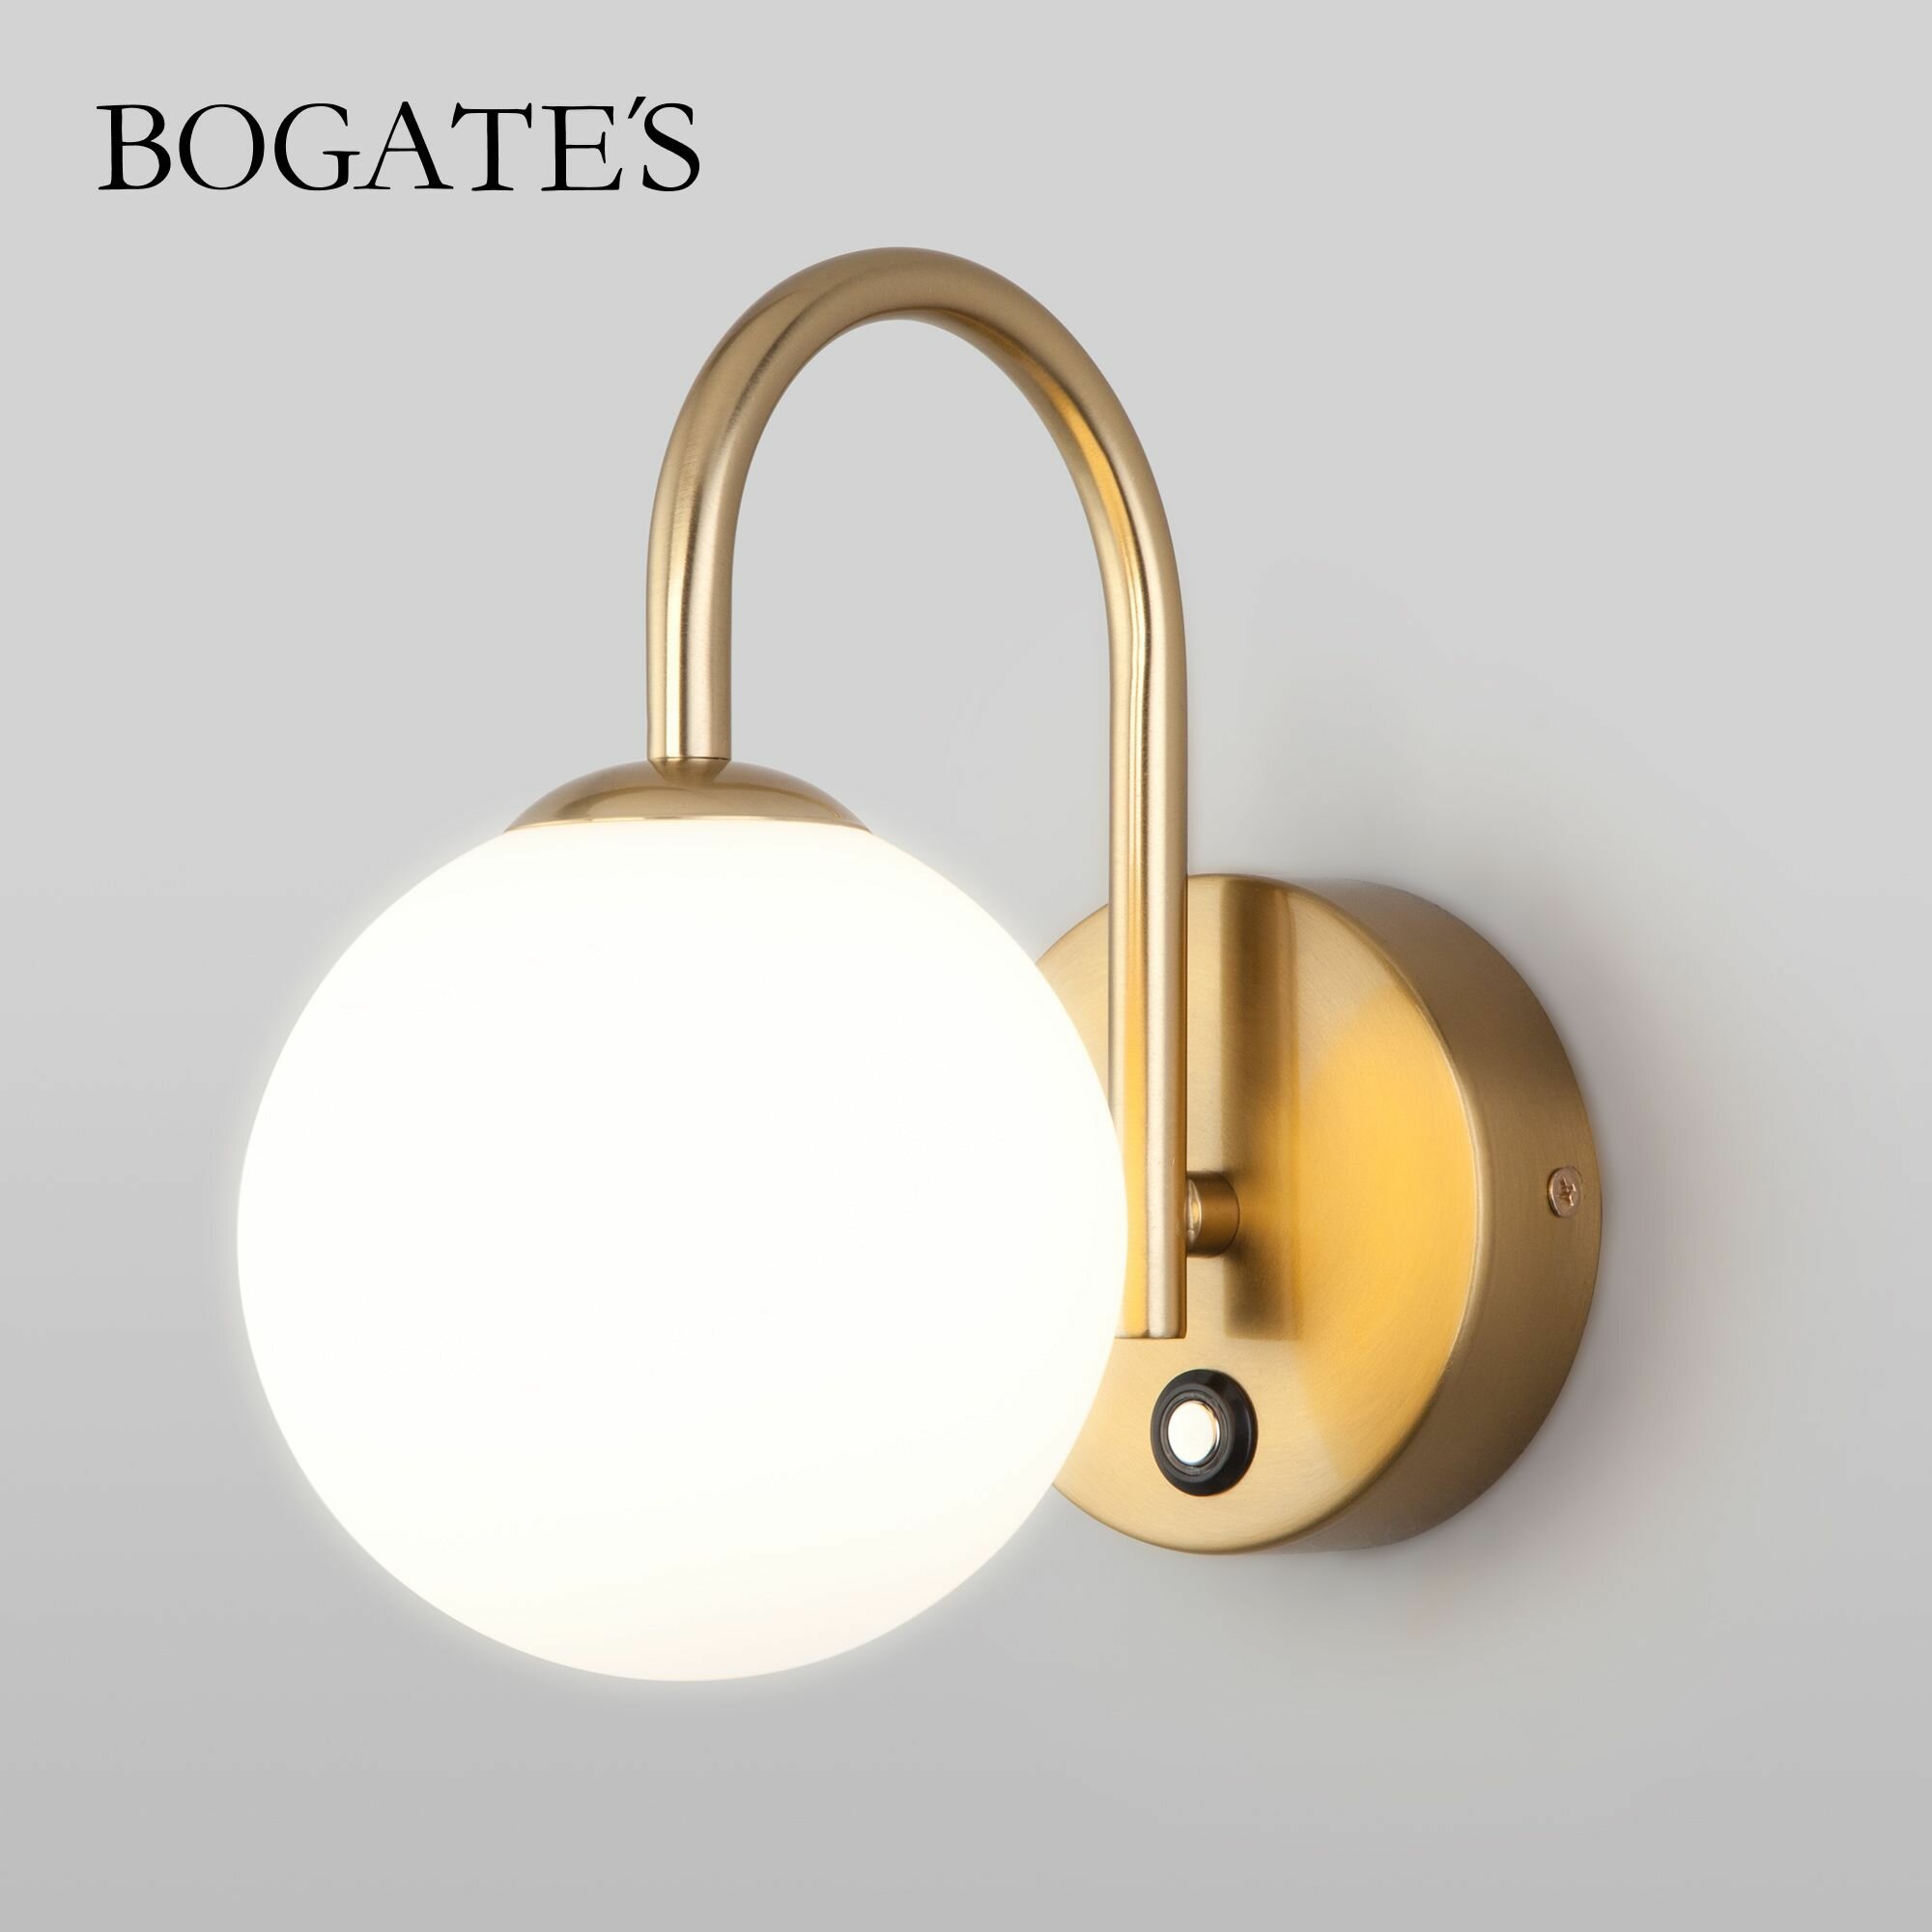 Бра / Настенный светильник со стеклянным плафоном Bogate's Brook 359/1 латунь